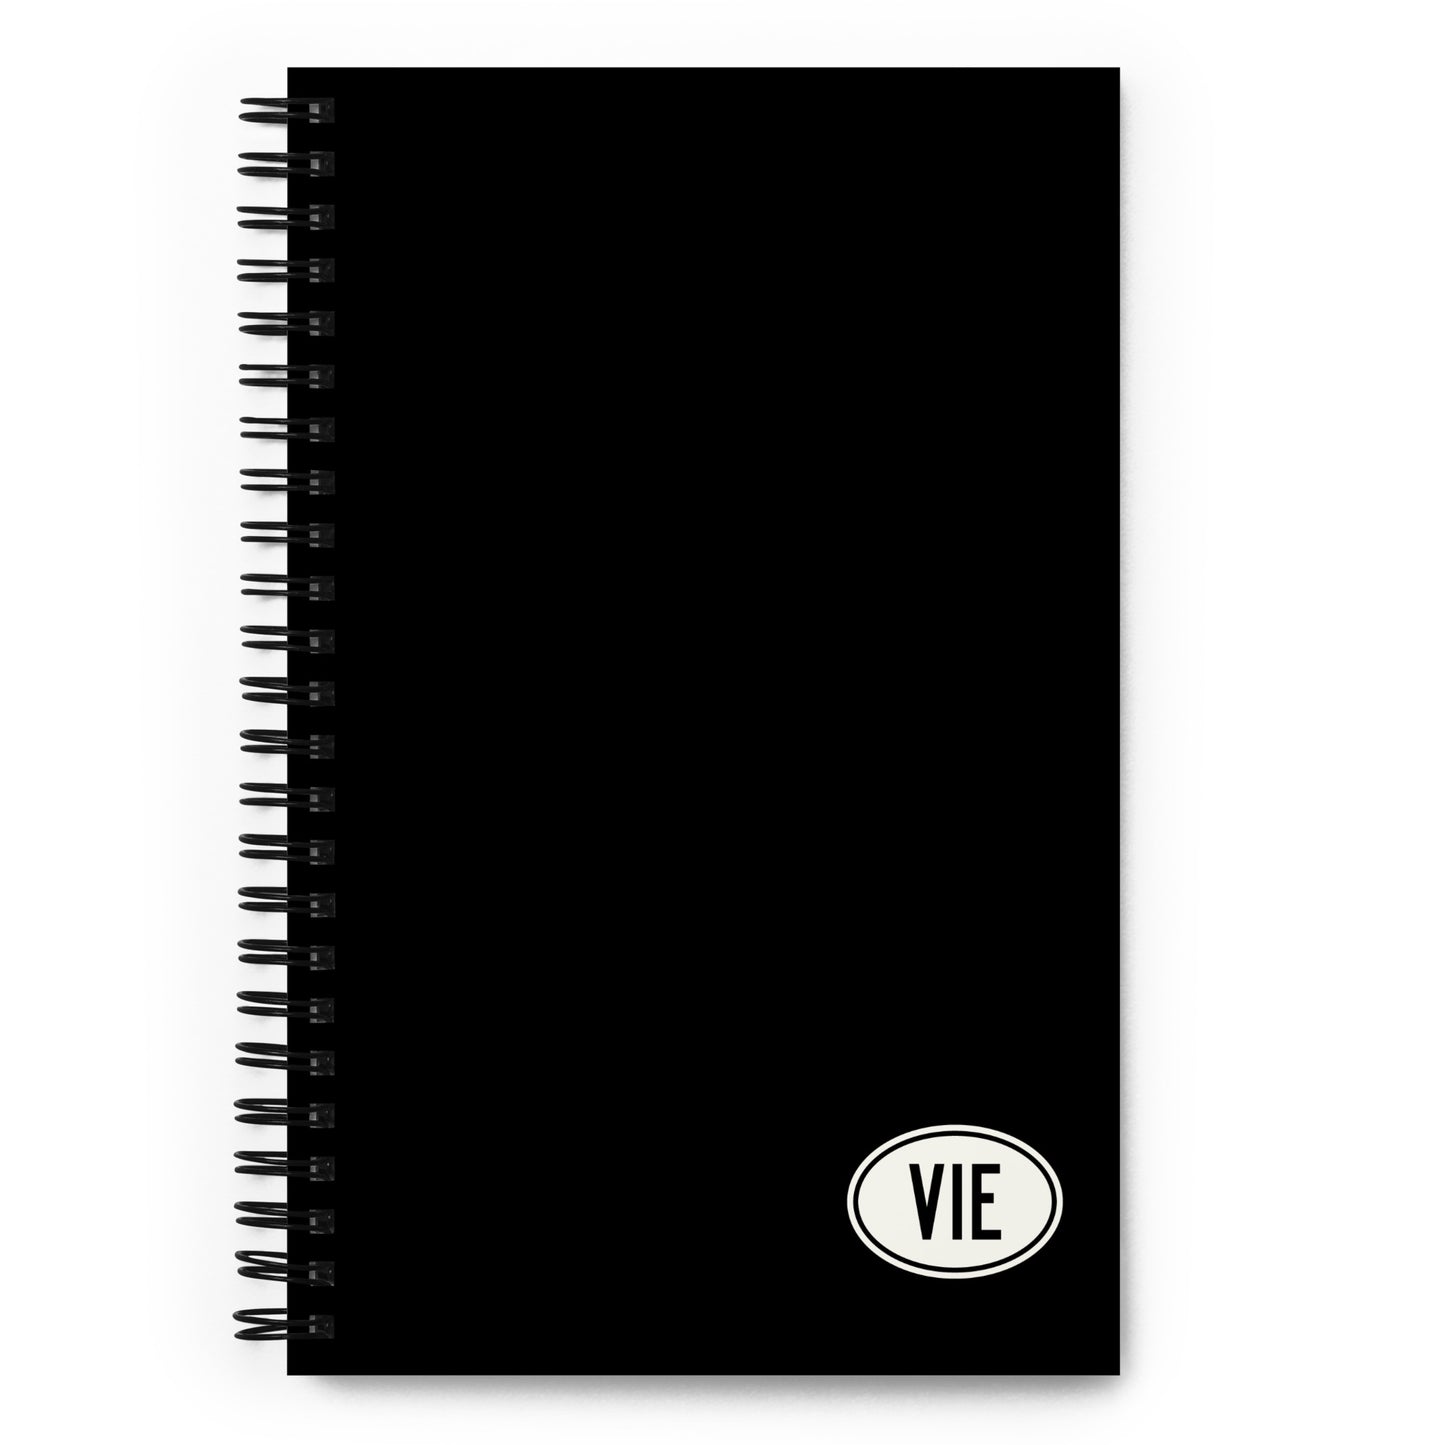 Unique Travel Gift Spiral Notebook - White Oval • VIE Vienna • YHM Designs - Image 01